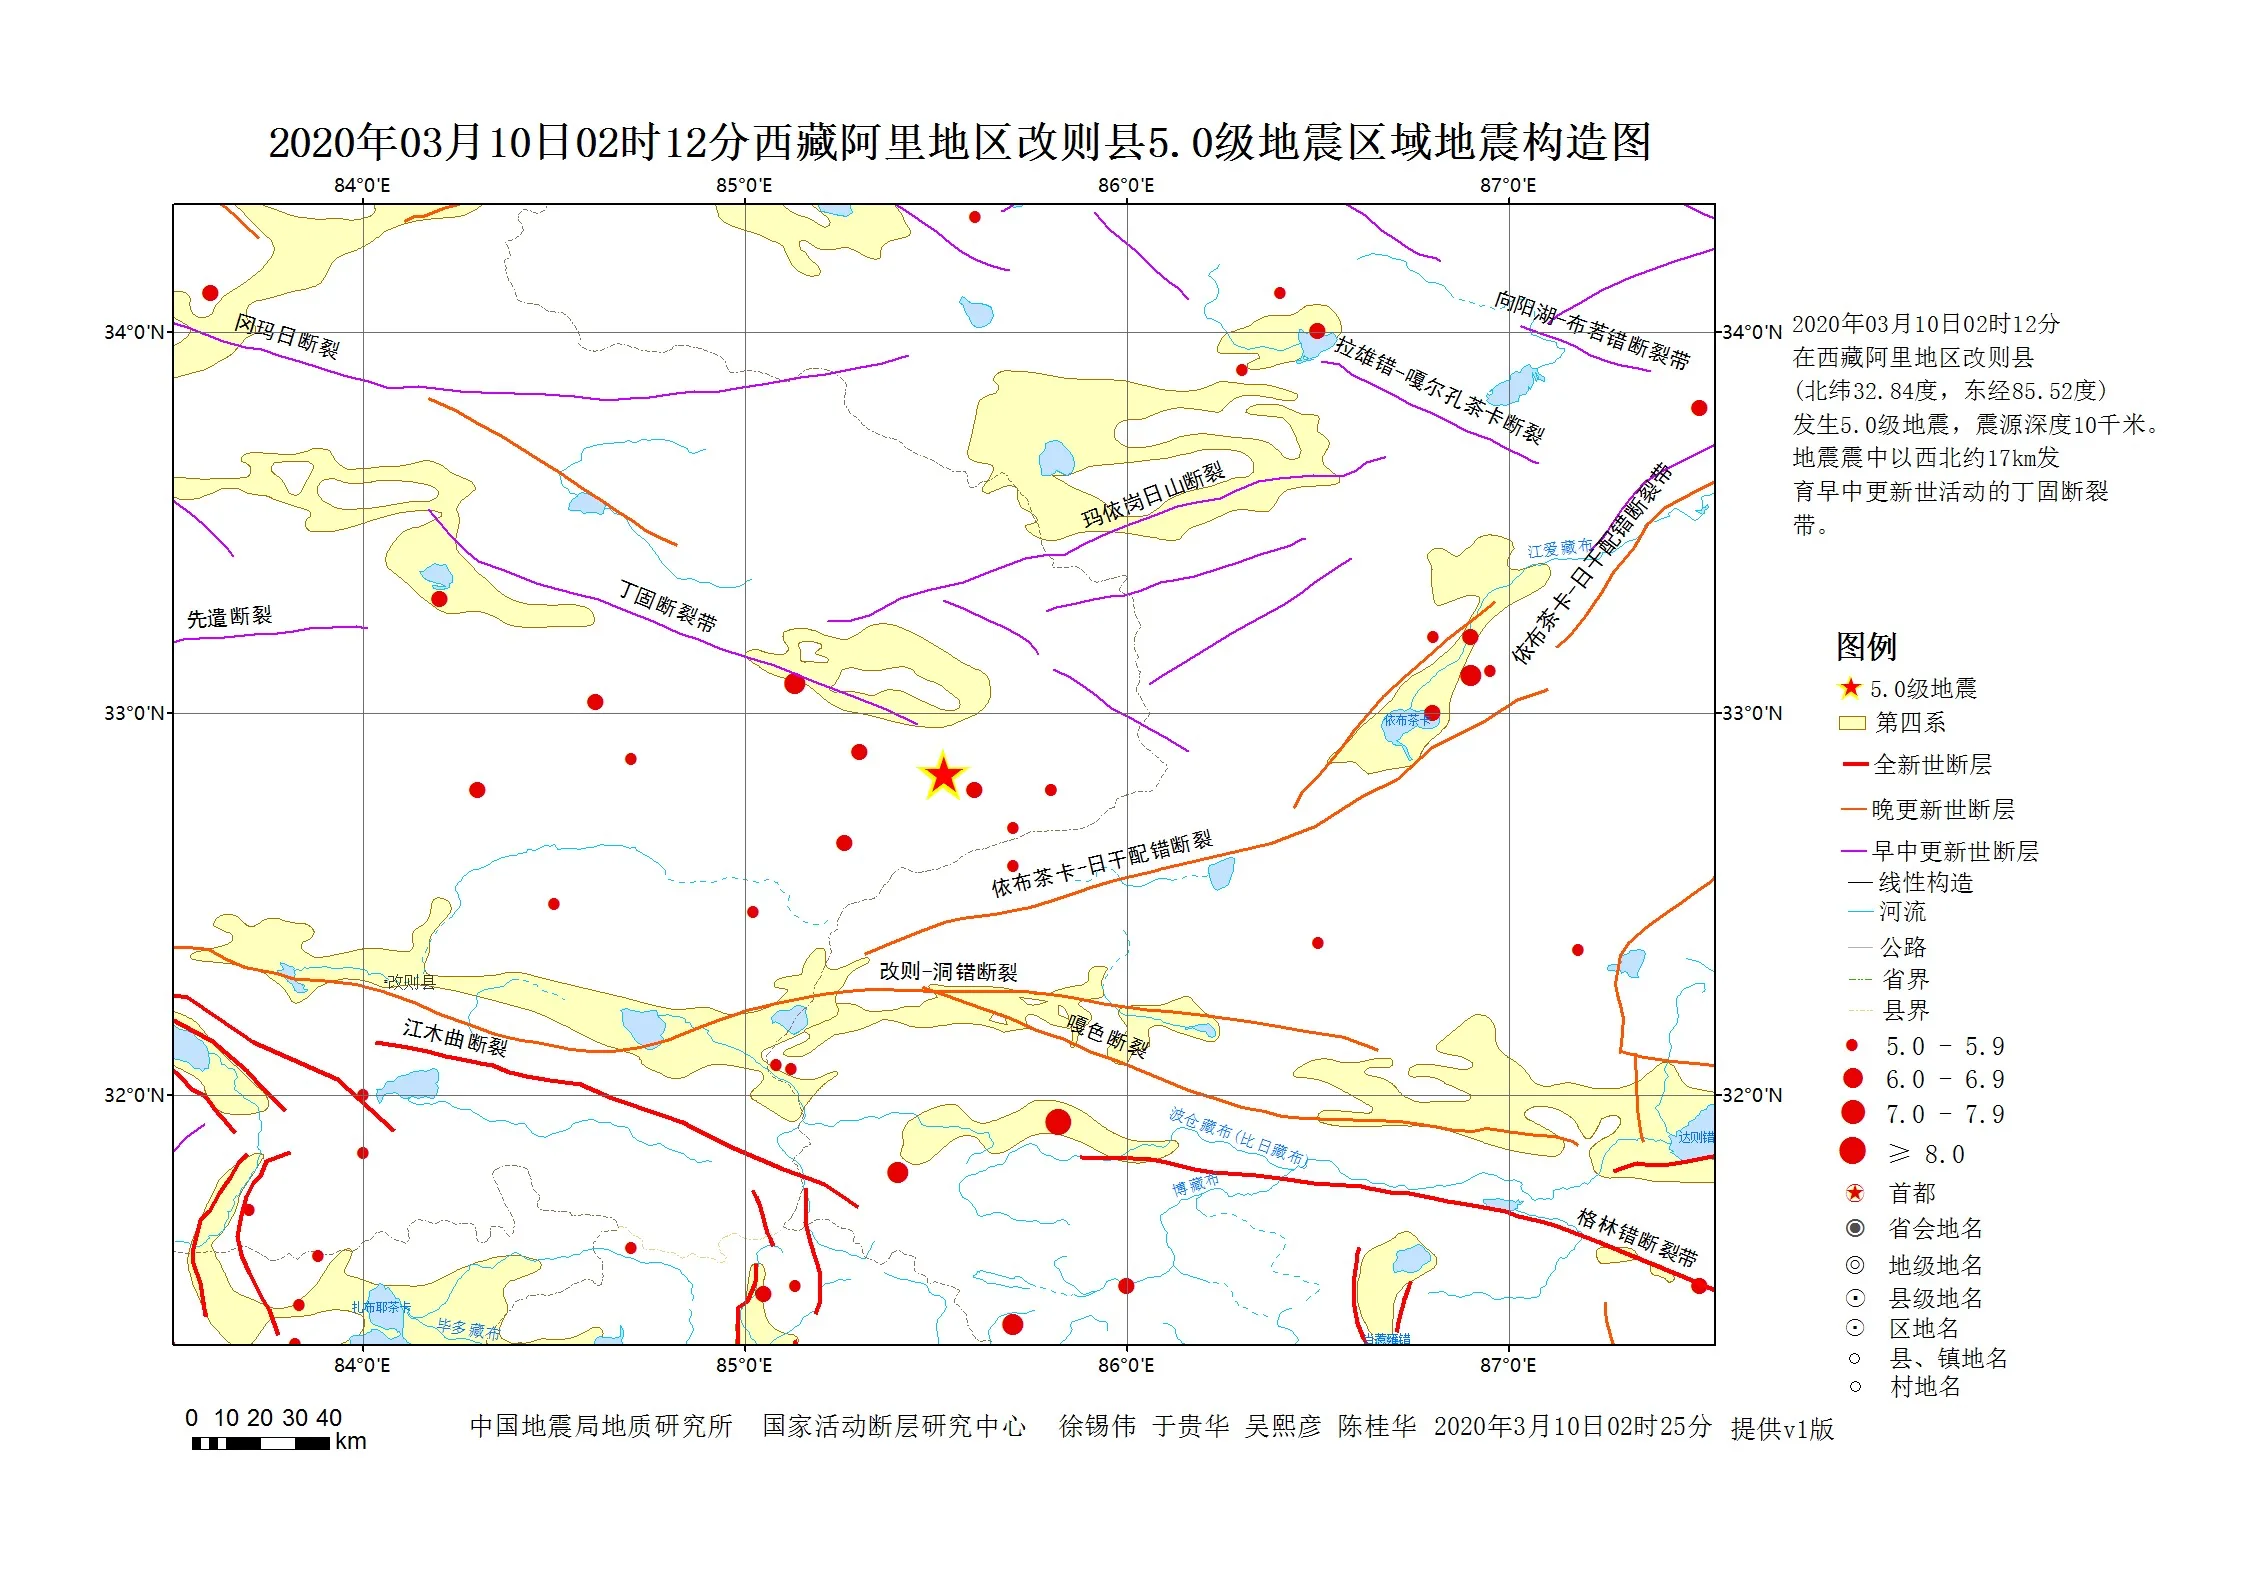 西藏阿里地区改则县发生5.0级地震(2020.3.10)